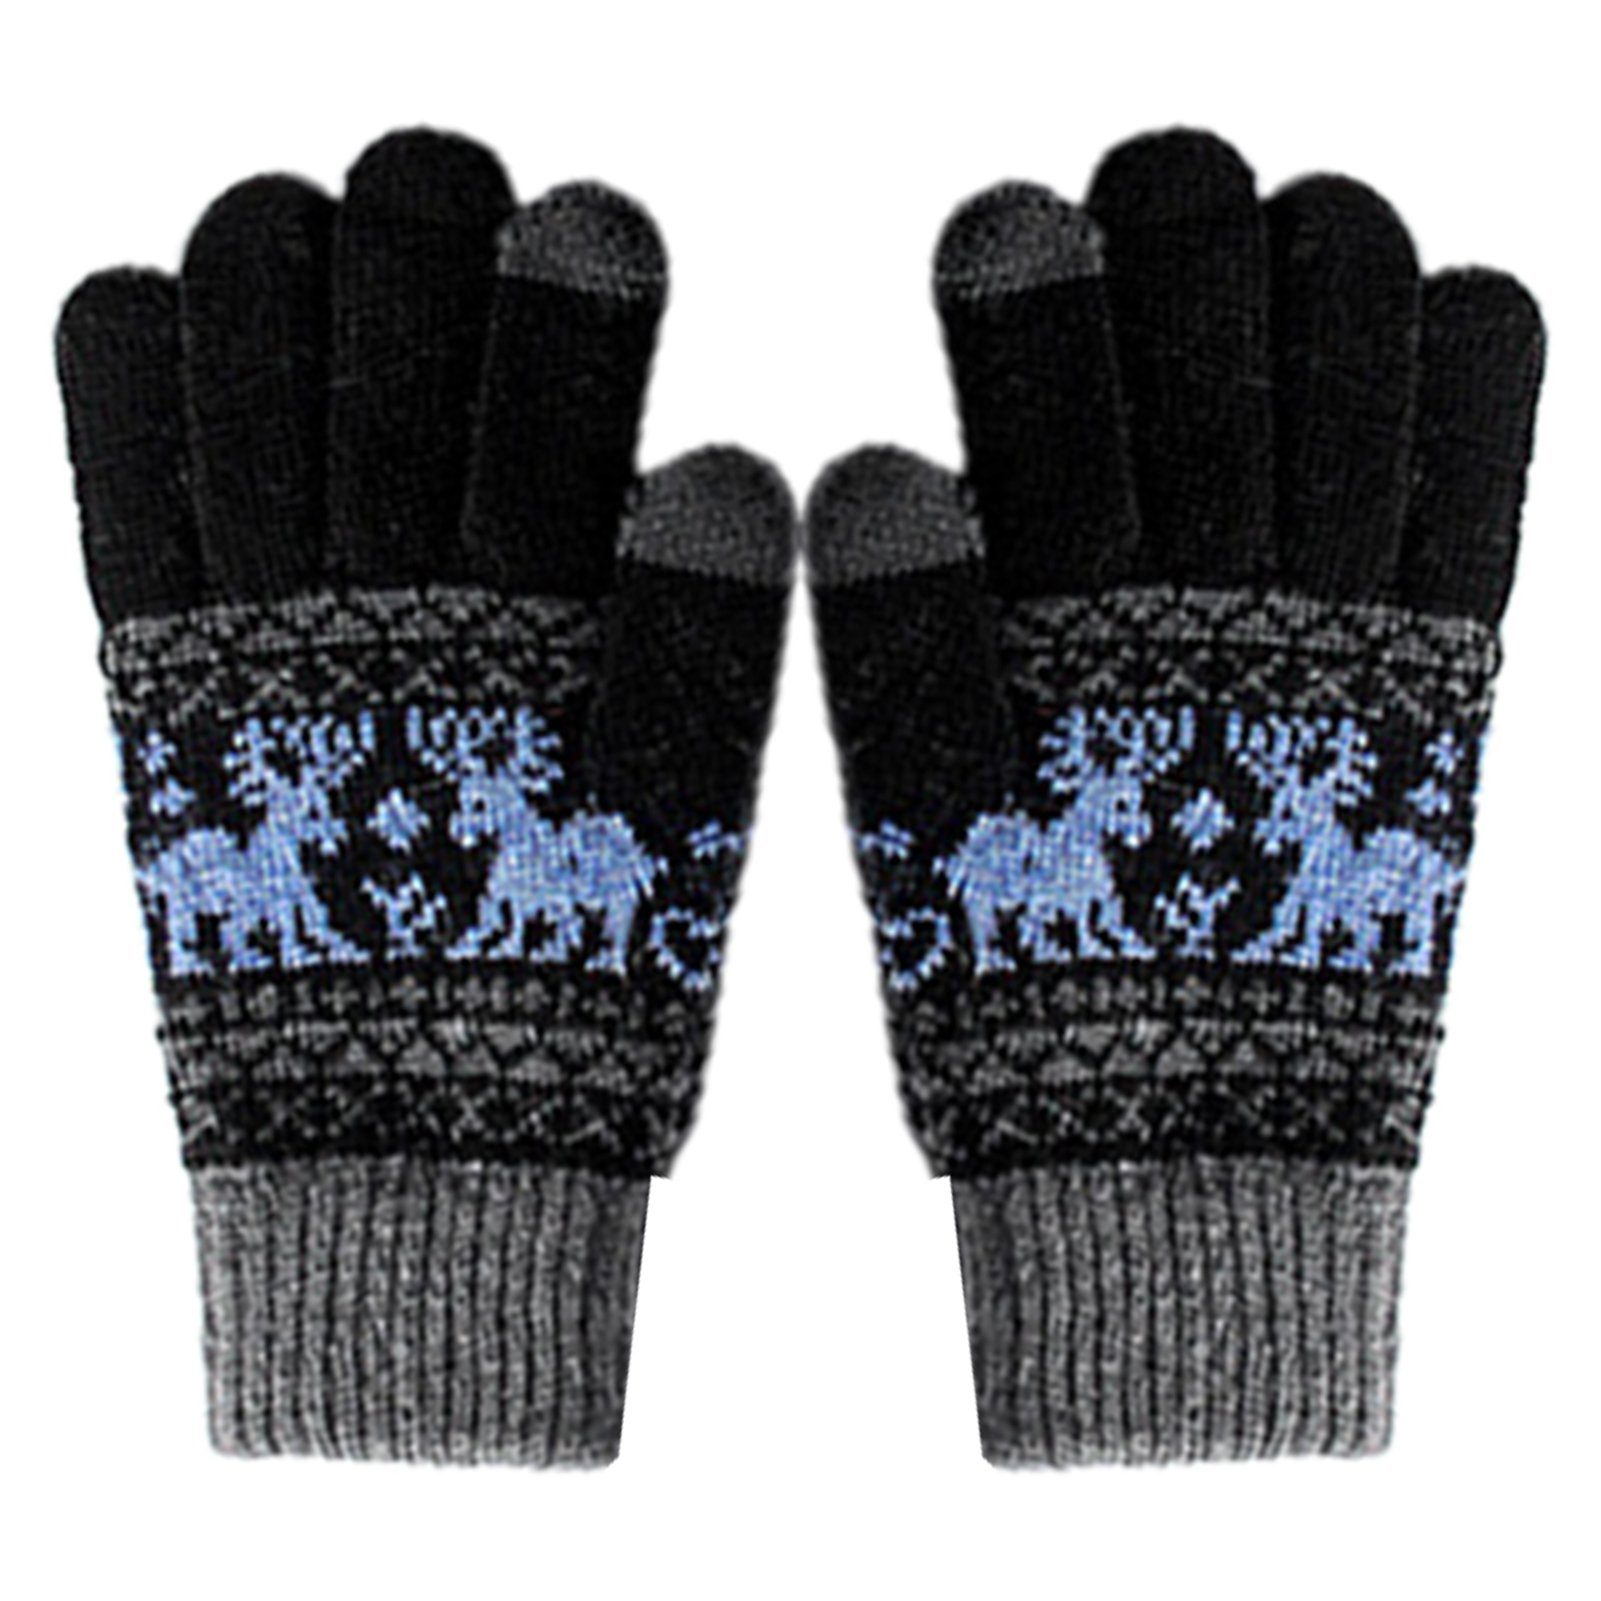 Blusmart Strickhandschuhe Damenhandschuhe, Gestrickte Touchscreen-Handschuhe Wärmende Fleecehandschuhe Verdickte marineblau himmelblau